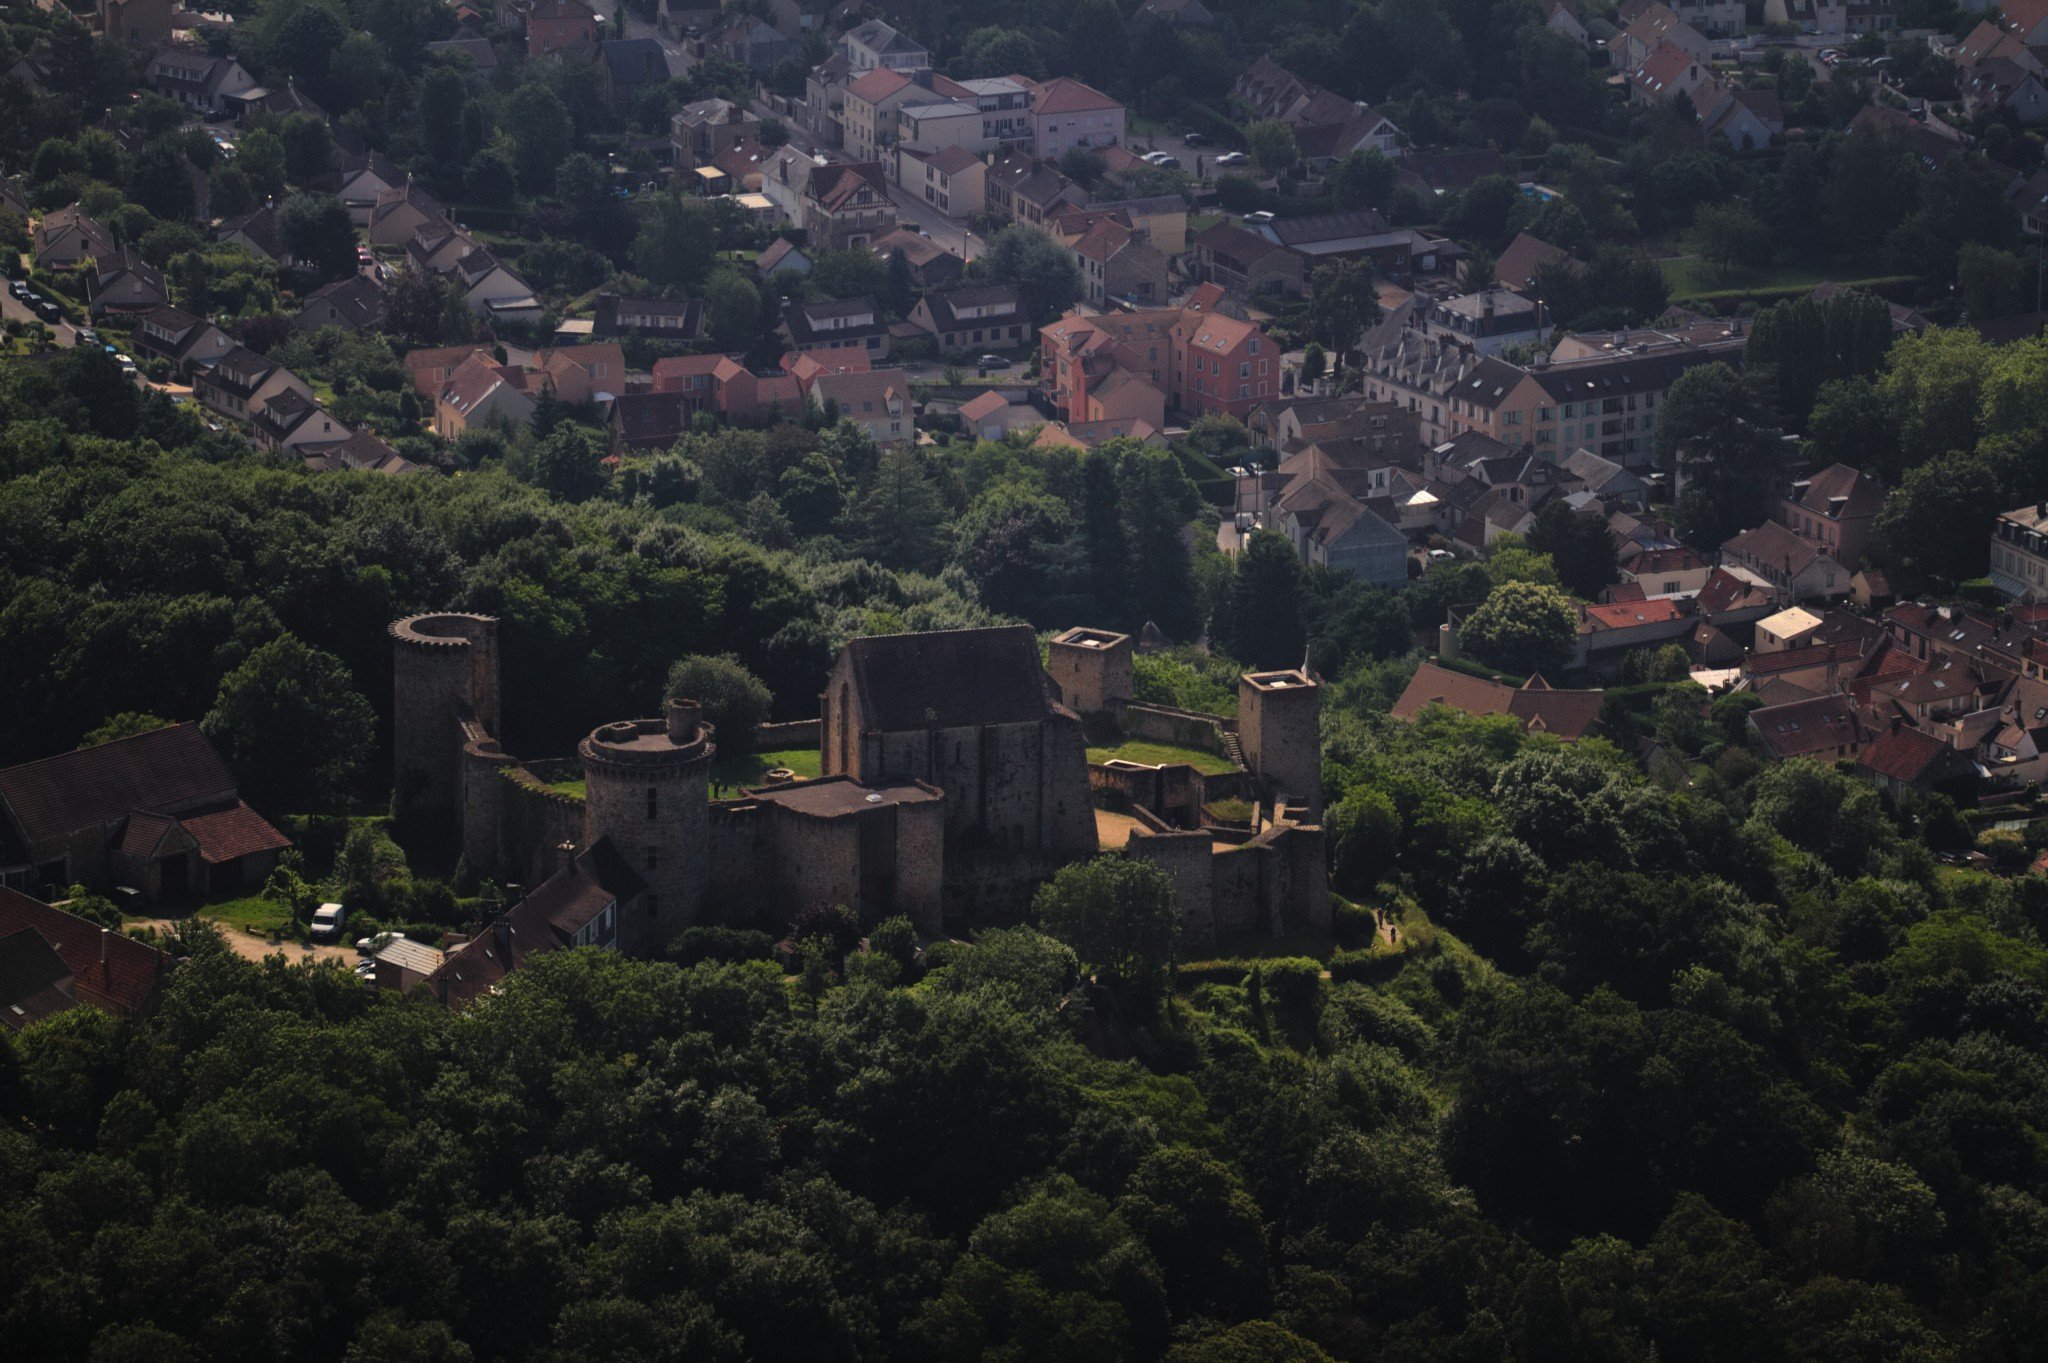 Un château fort en pierre au milieu de la végétation, sur une hauteur surplombant une petite ville.